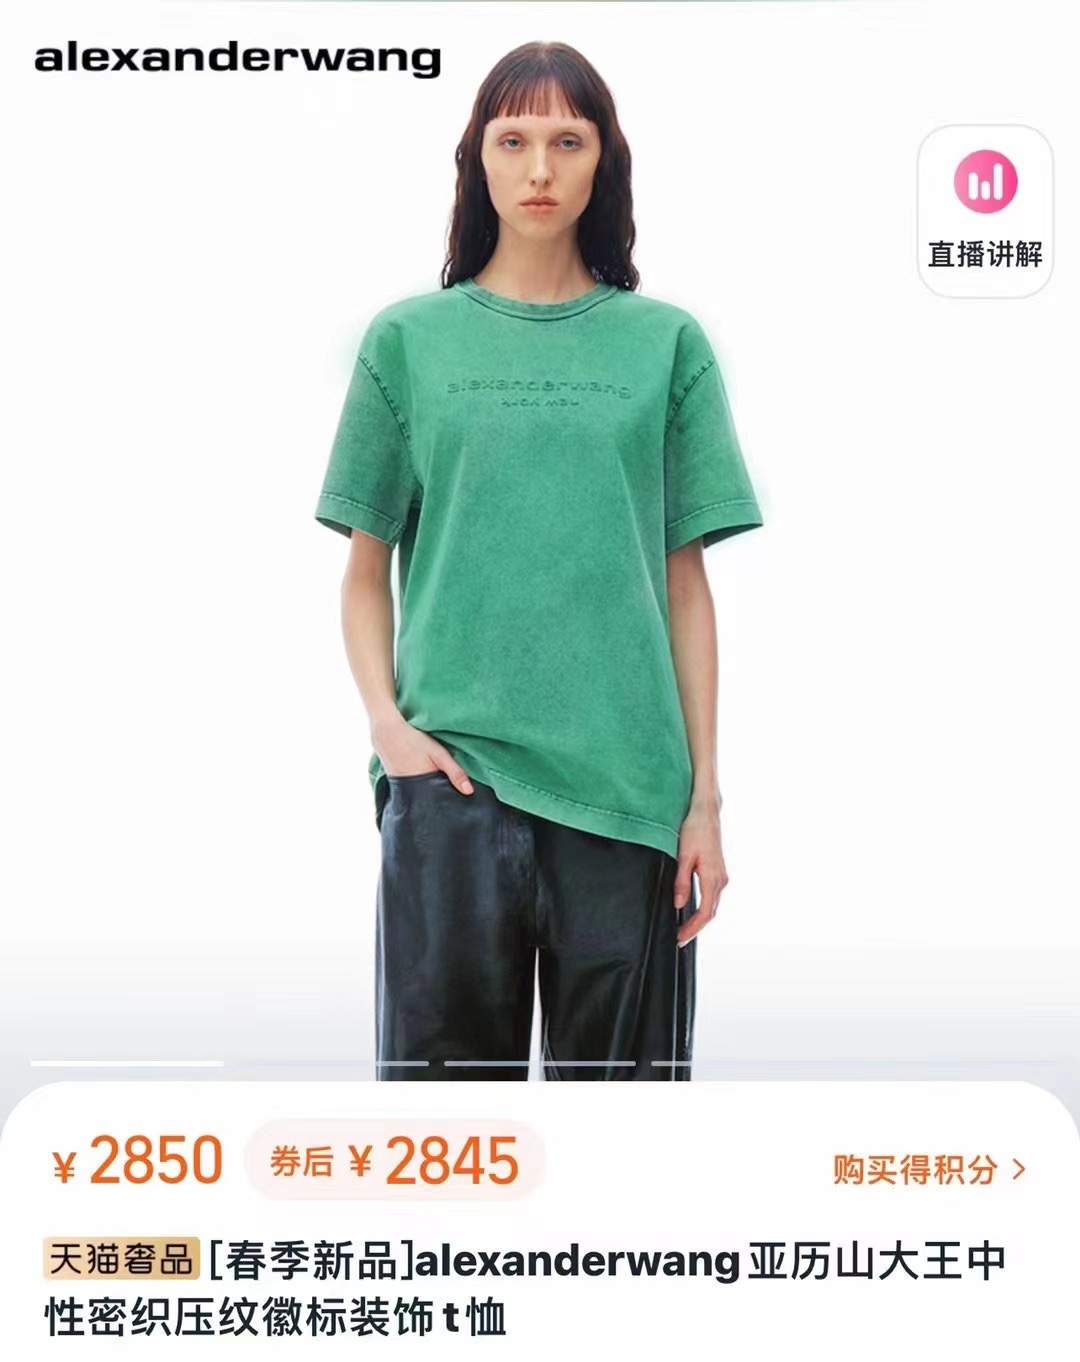 Alexander wang 24新款立体压纹字母T恤 宽松版型没有束缚感 炭黑色 灰色 绿色 米杏色 S M L码